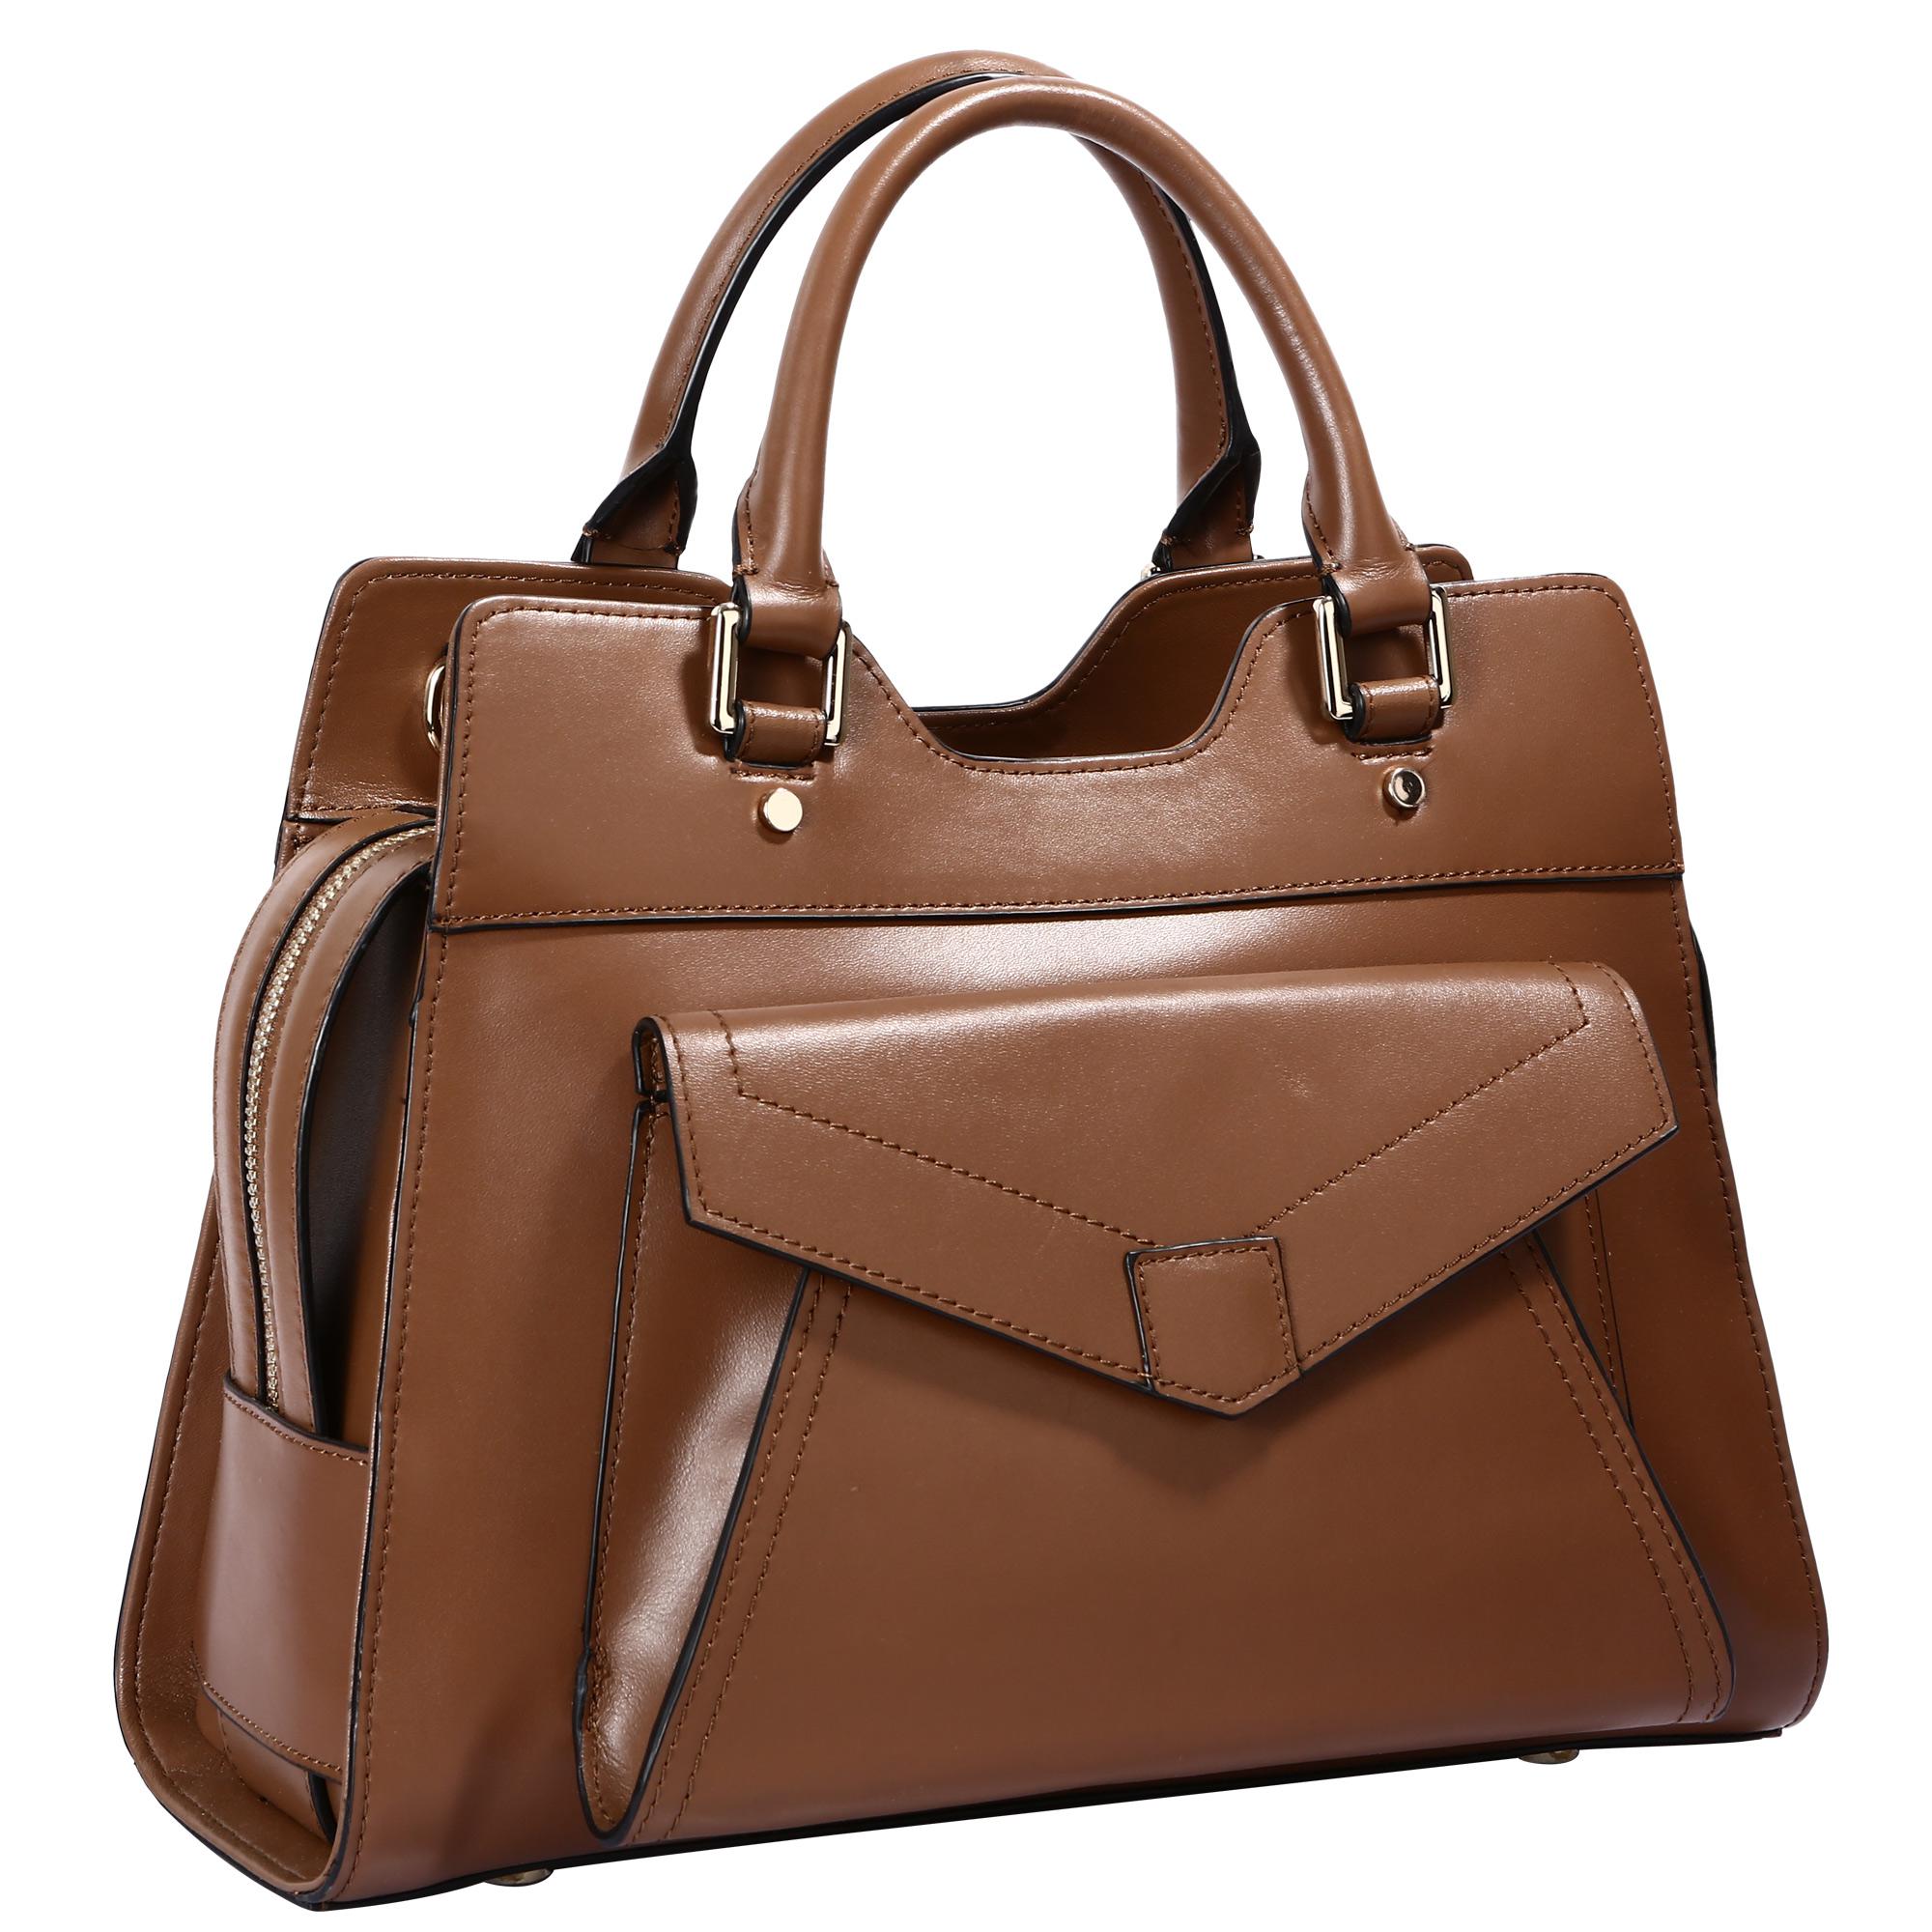 Качественная женская сумка. Сумка женская Polar 50010121, коричневый. Сумка женская Pola 897f, коричневый. Pola Leather сумка. Кожаная сумка а&h 5113 Brown.